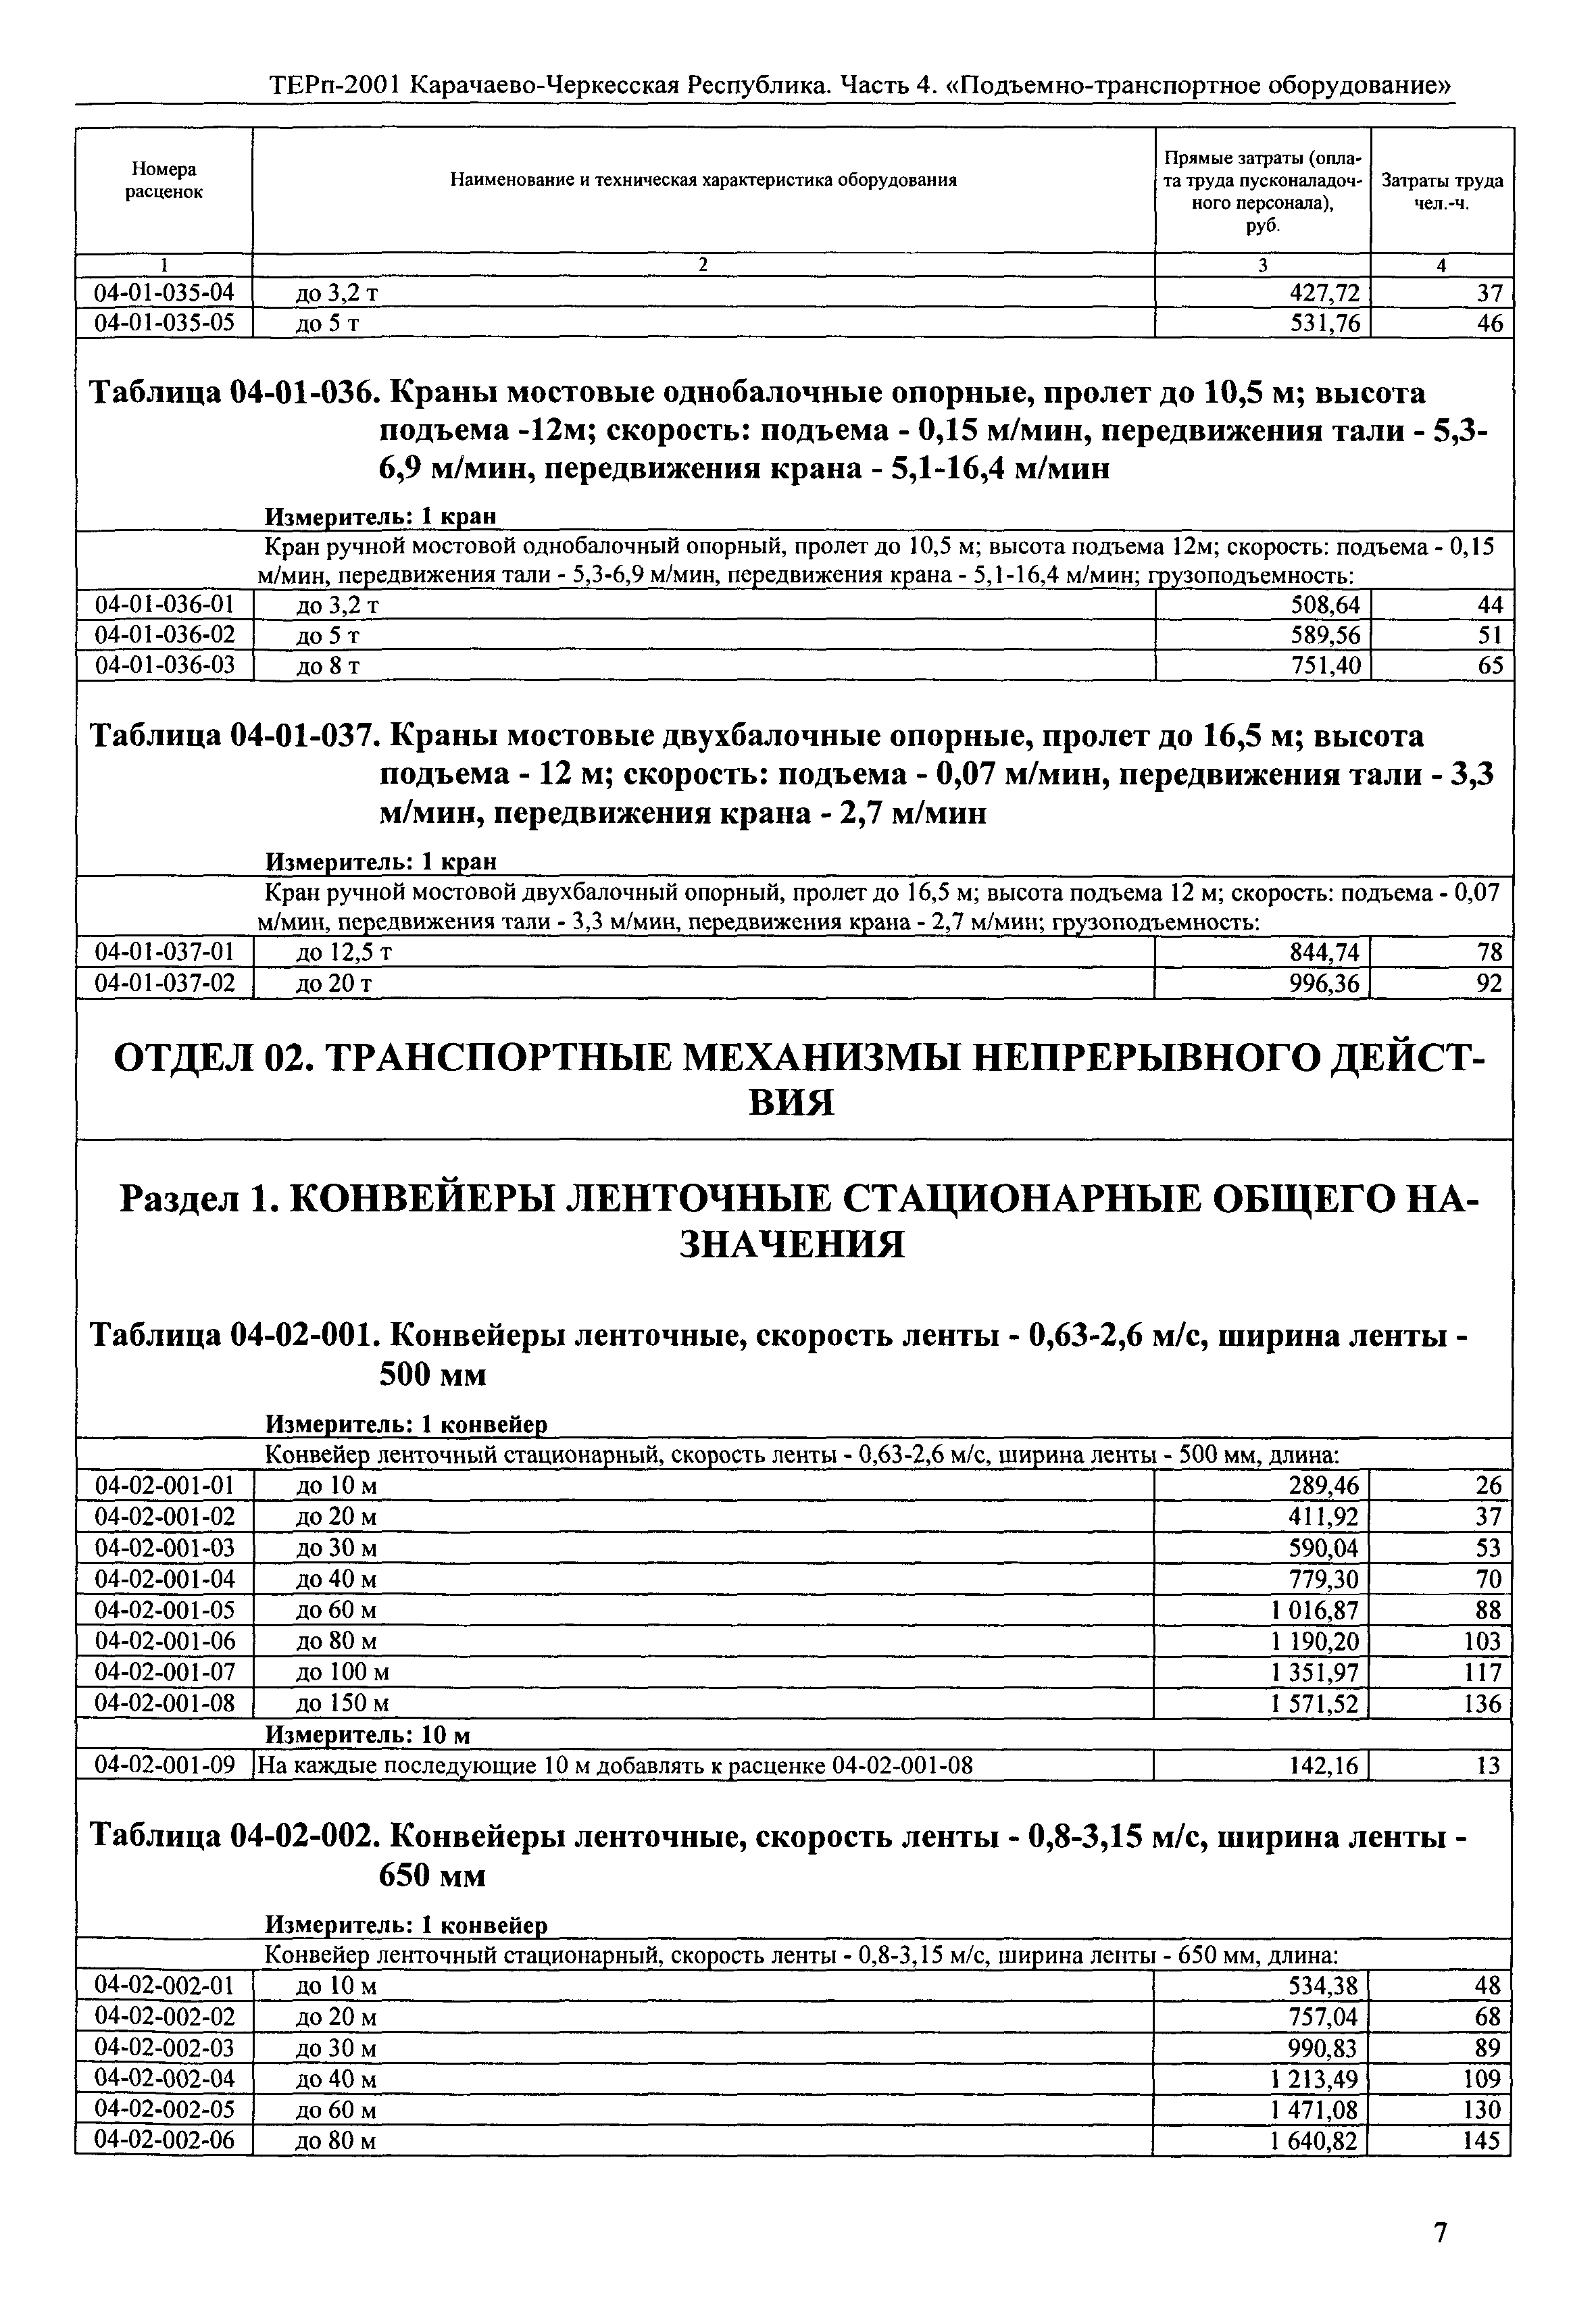 ТЕРп Карачаево-Черкесская Республика 04-2001